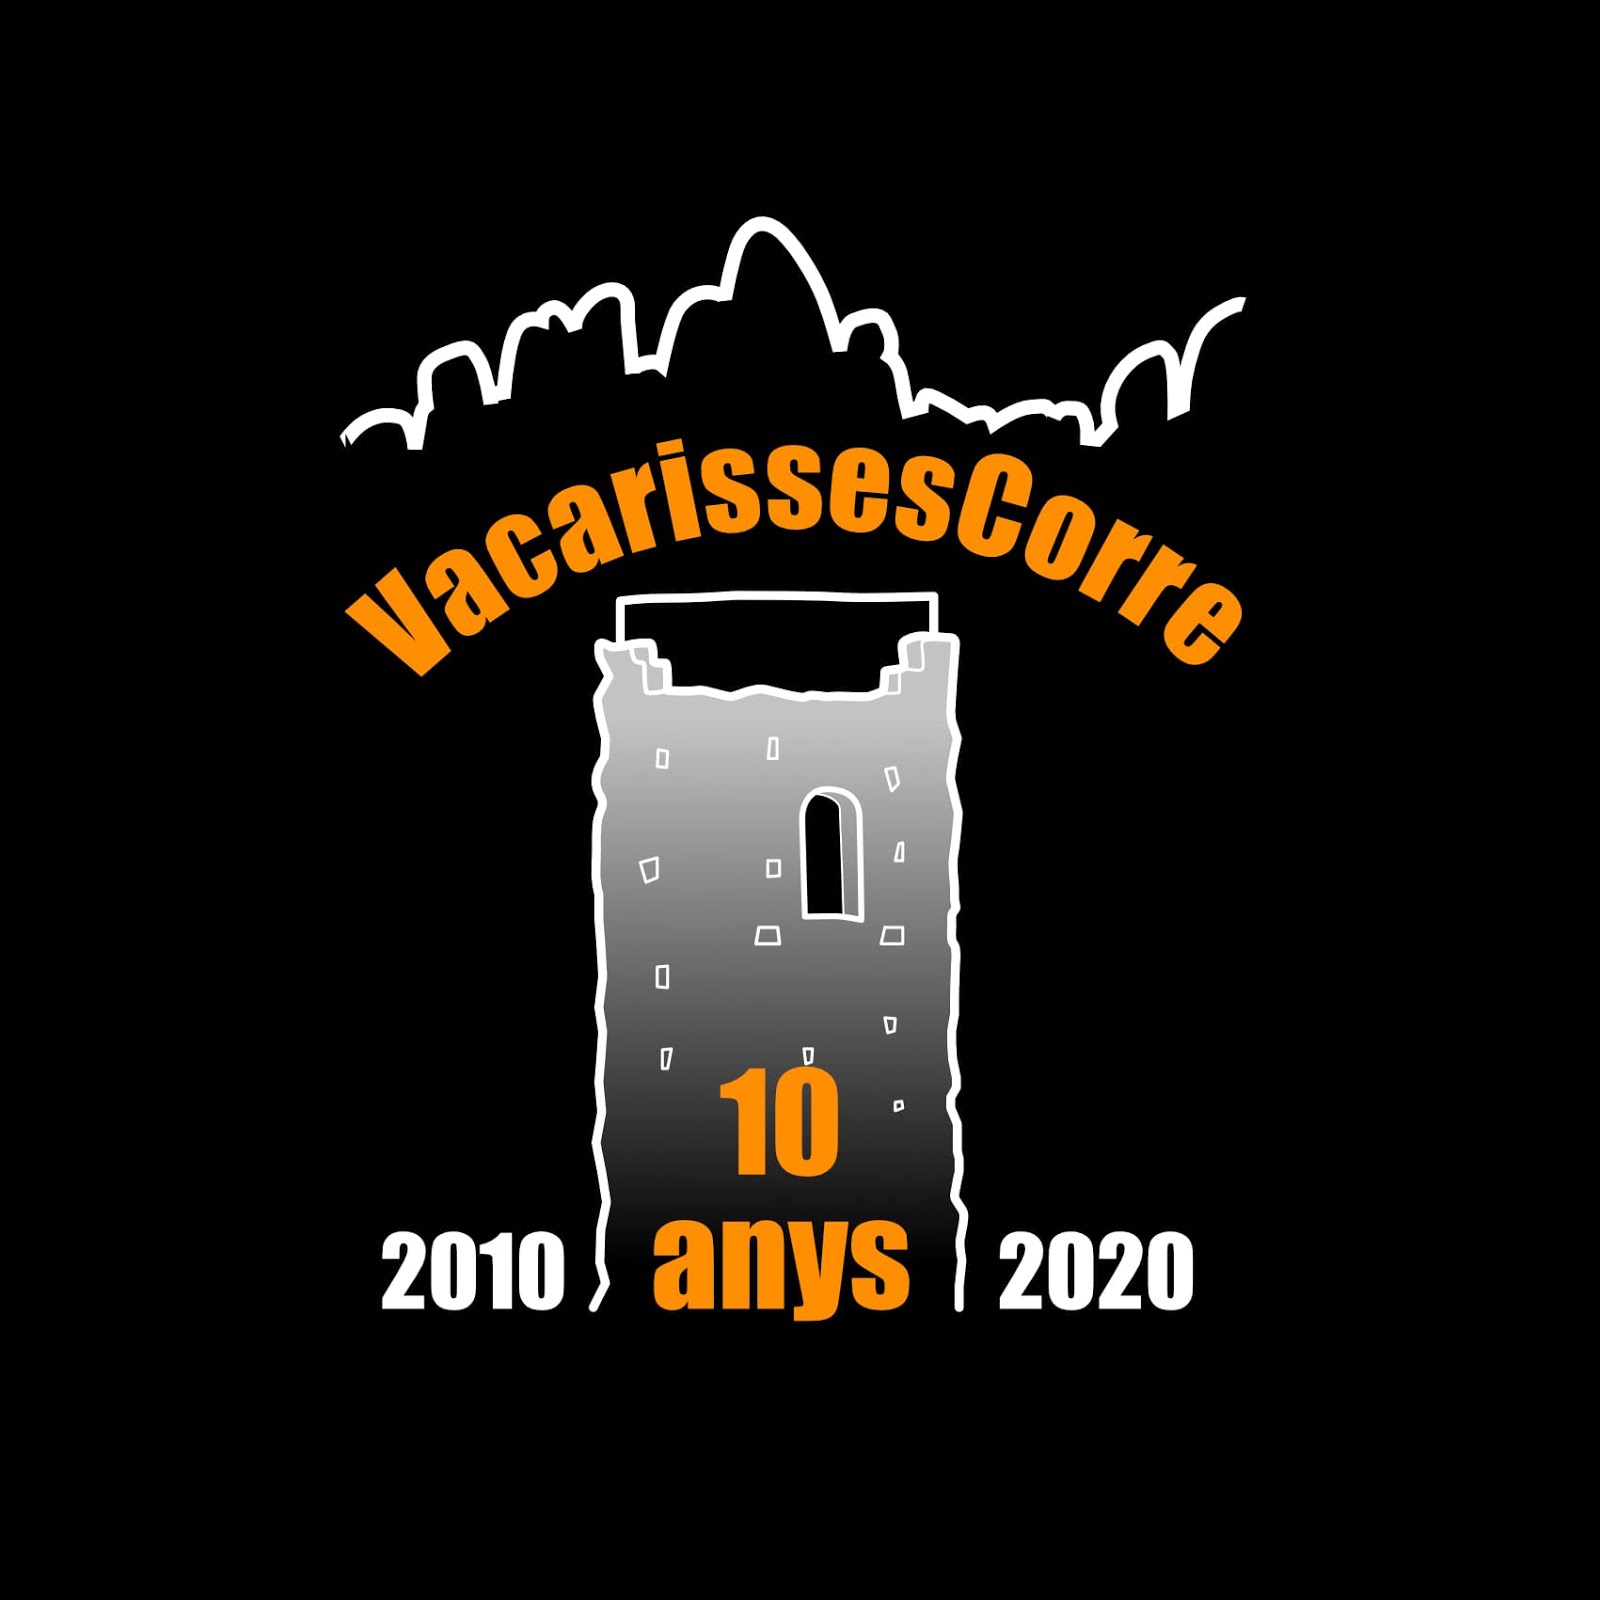 VacarissesCorre, 2010-2020